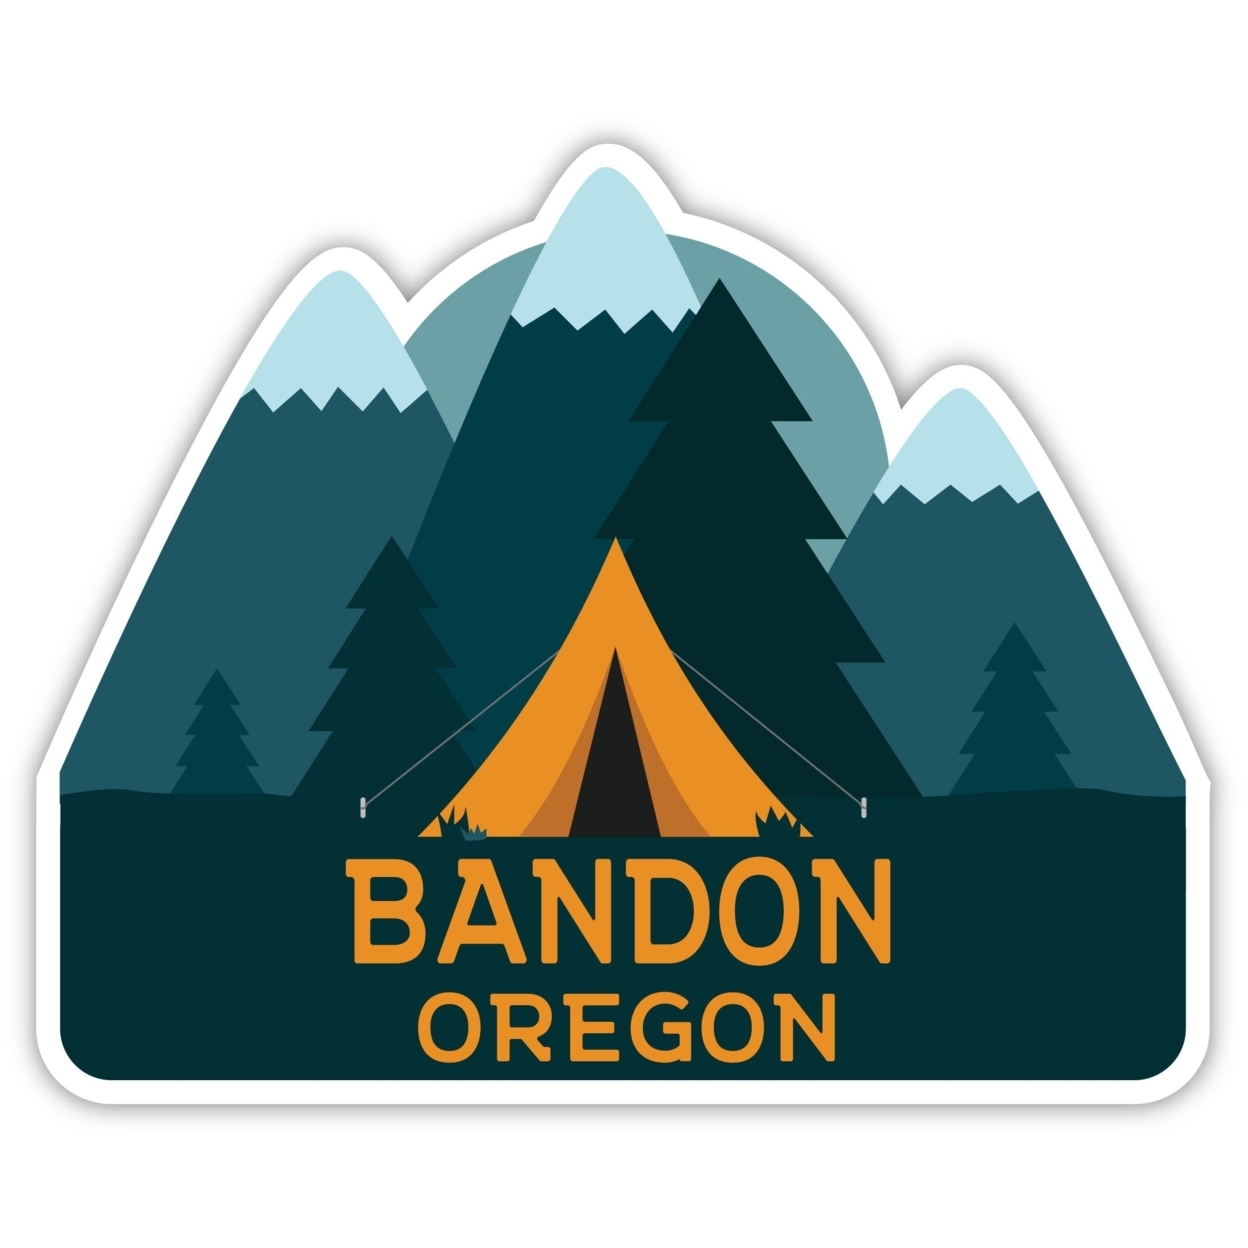 Bandon Oregon Souvenir Decorative Stickers (Choose Theme And Size) - Single Unit, 4-Inch, Tent